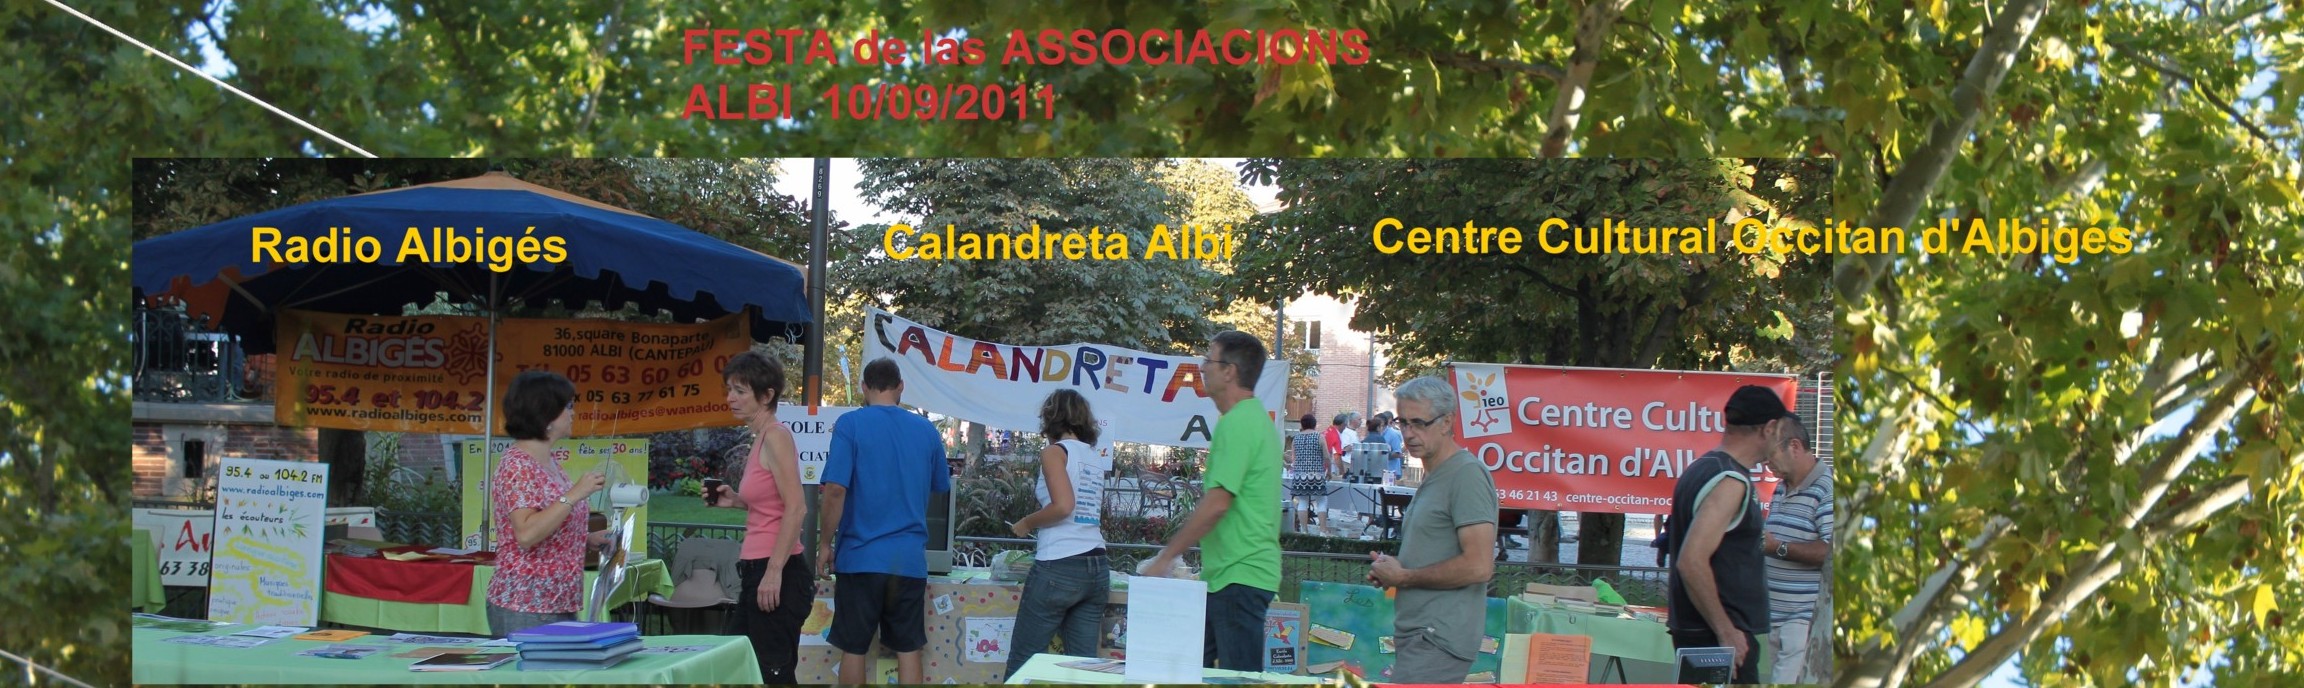 Fête des Associations, Albi, Septembre 2011